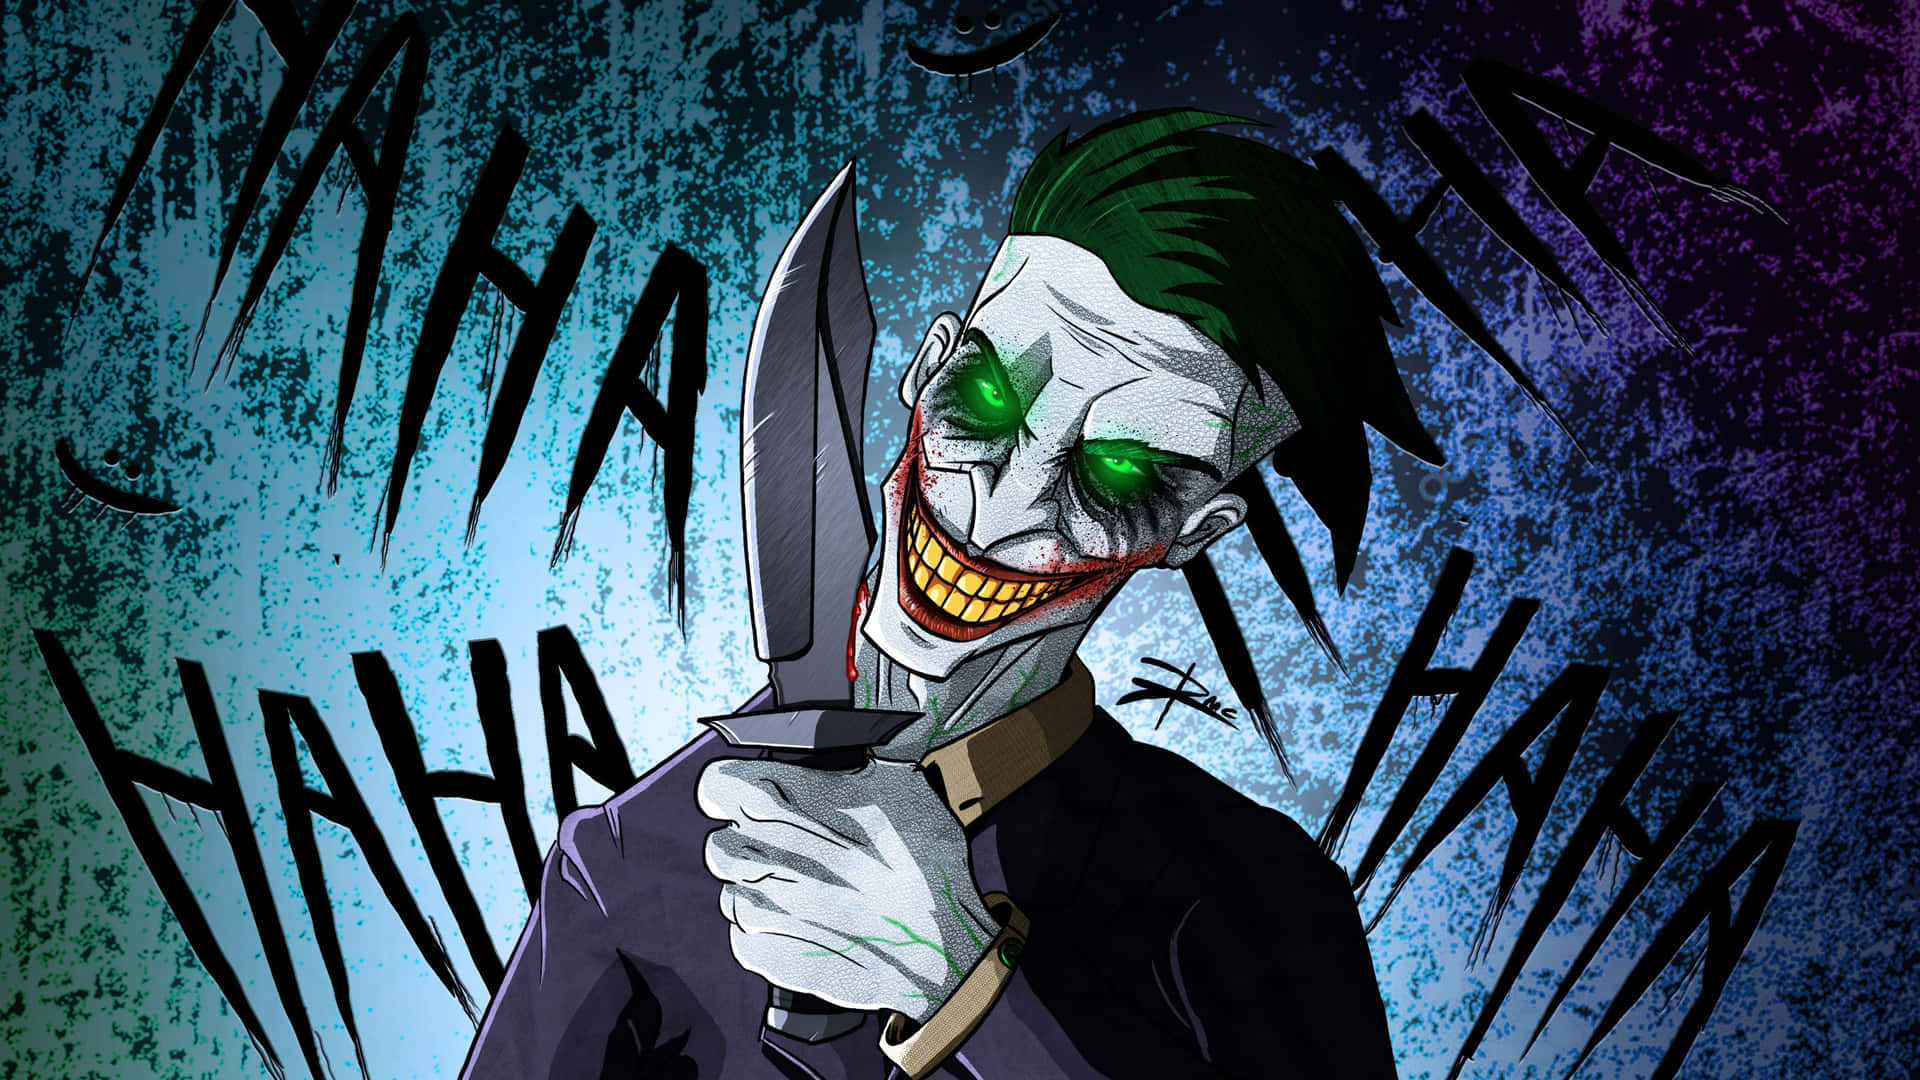 Cool Joker Holding Knife Haha Wallpaper